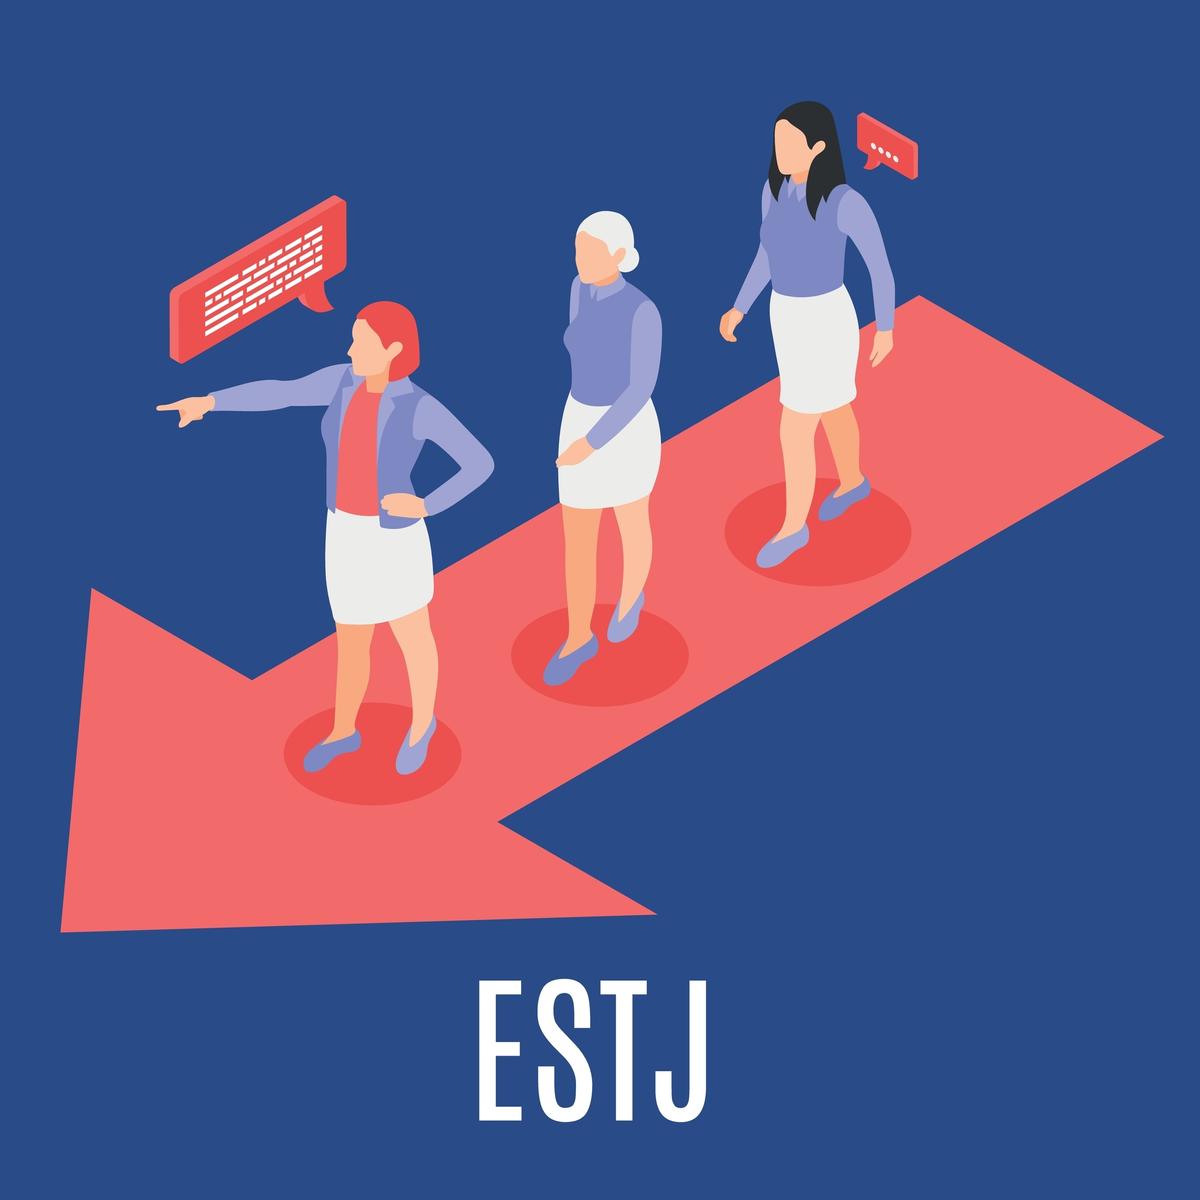 Khả năng lãnh đạo và khéo léo chỉ đạo là điểm mạnh của ESTJ.